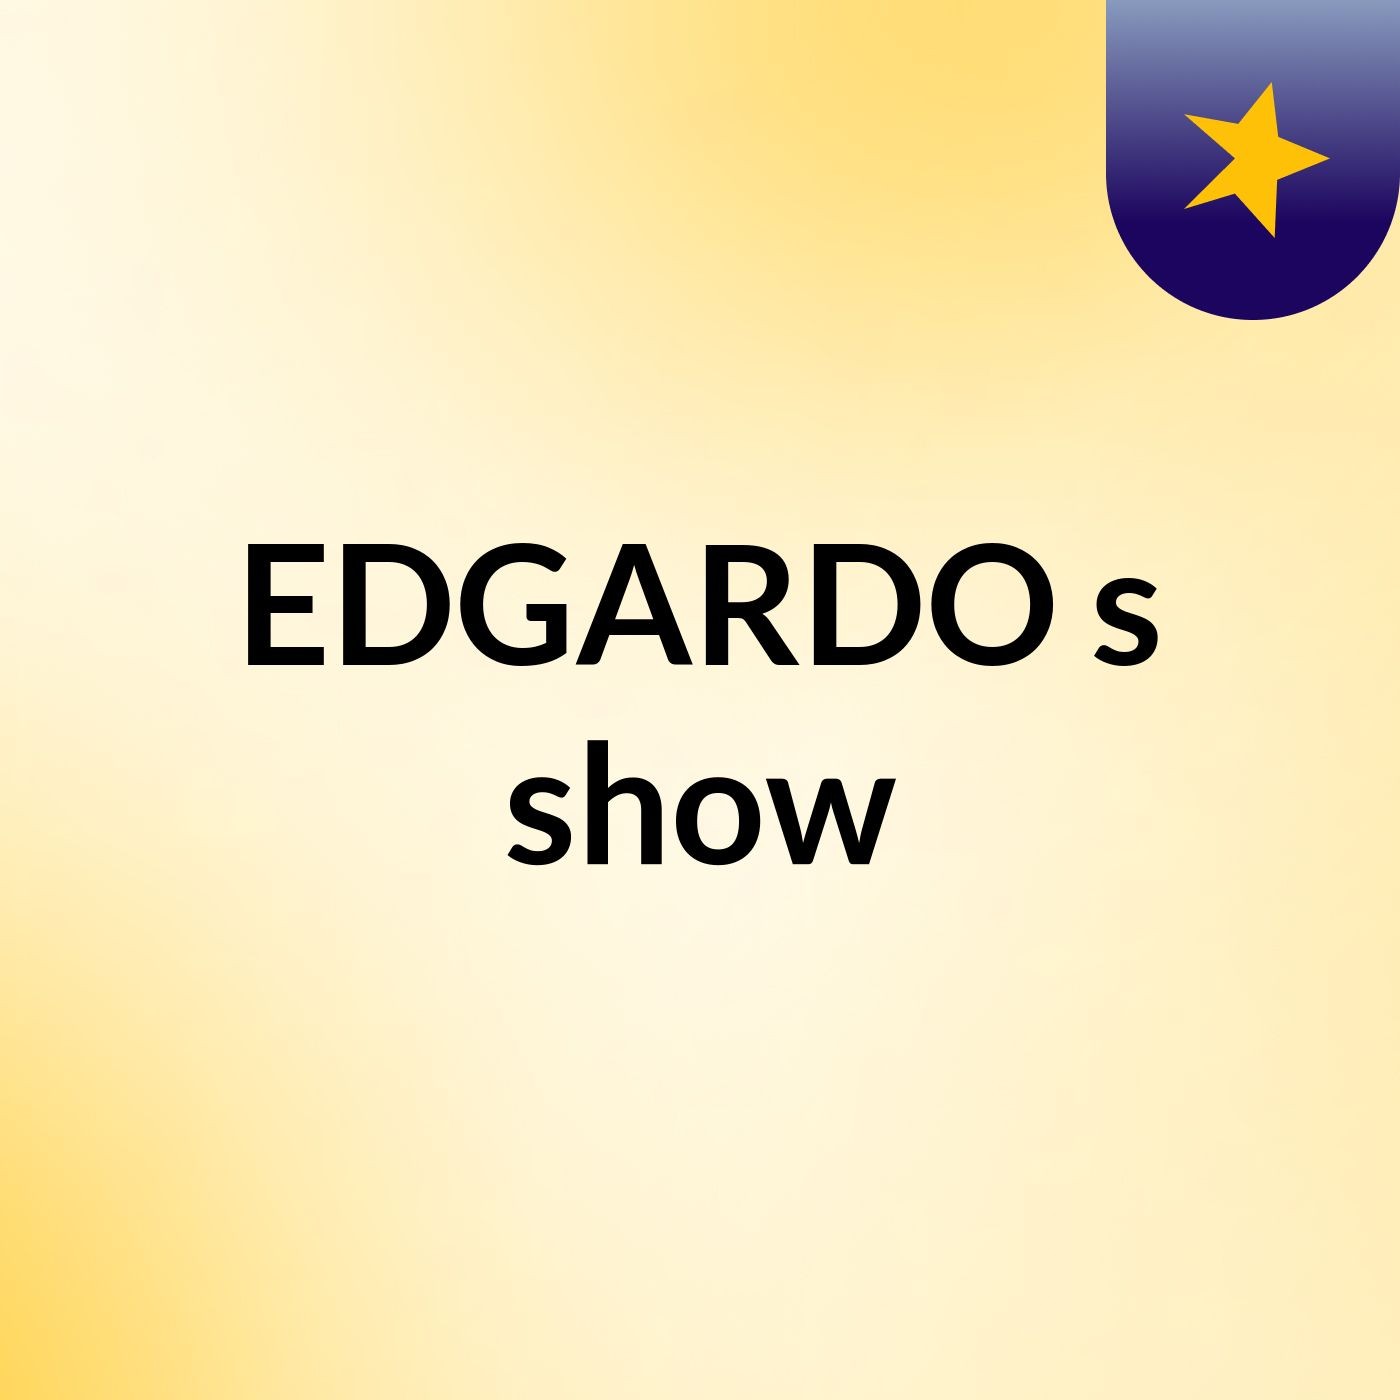 EDGARDO's show